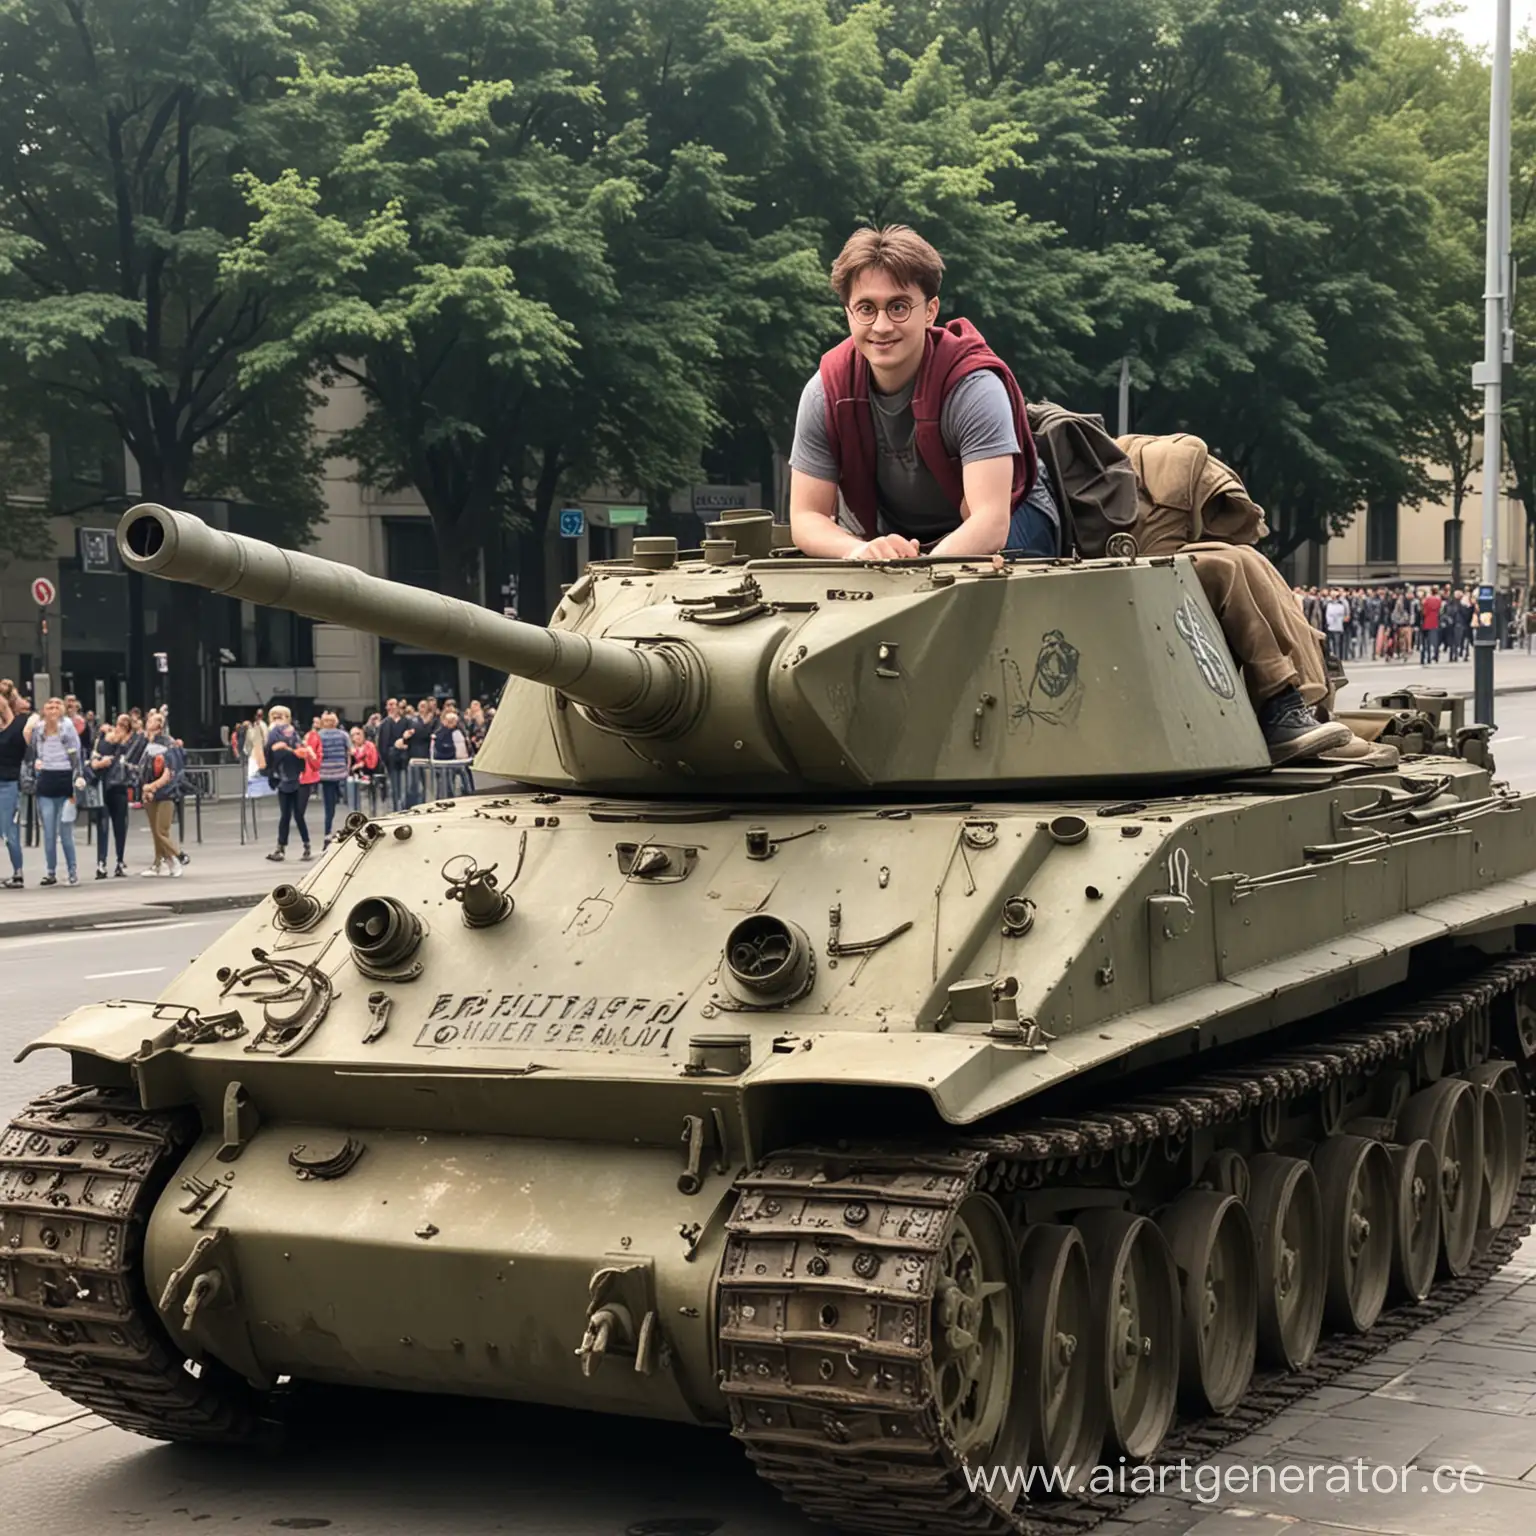 Гарри Поттер на немецком 
танке в берлине